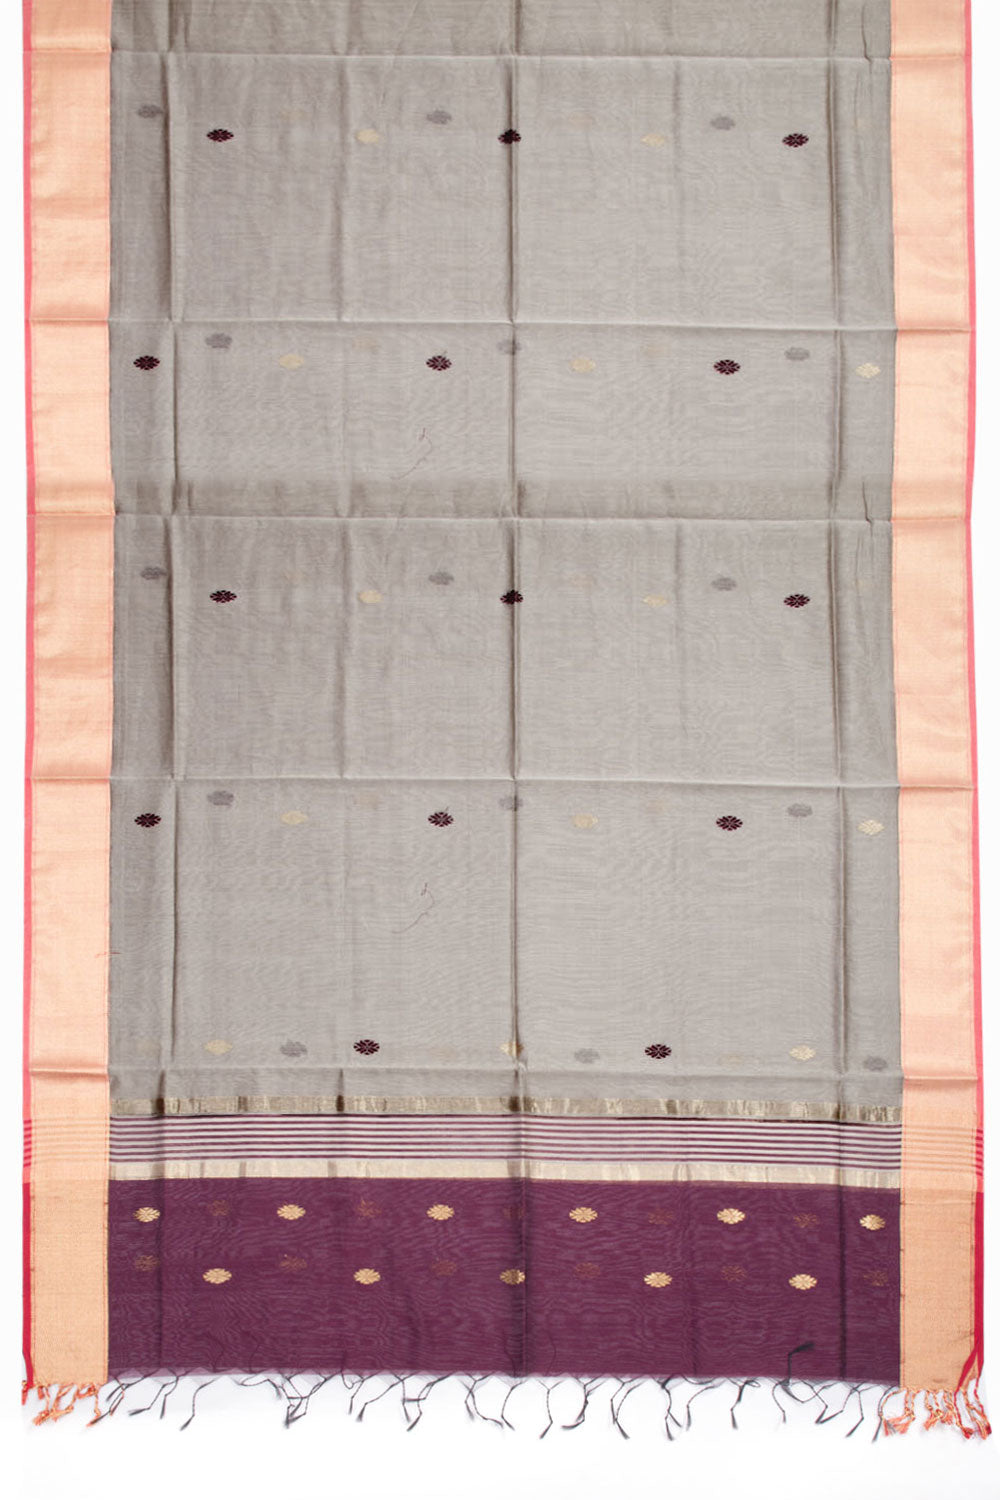 Violet Maheshwari Silk Cotton 2 pc Salwar Suit Material 10062204